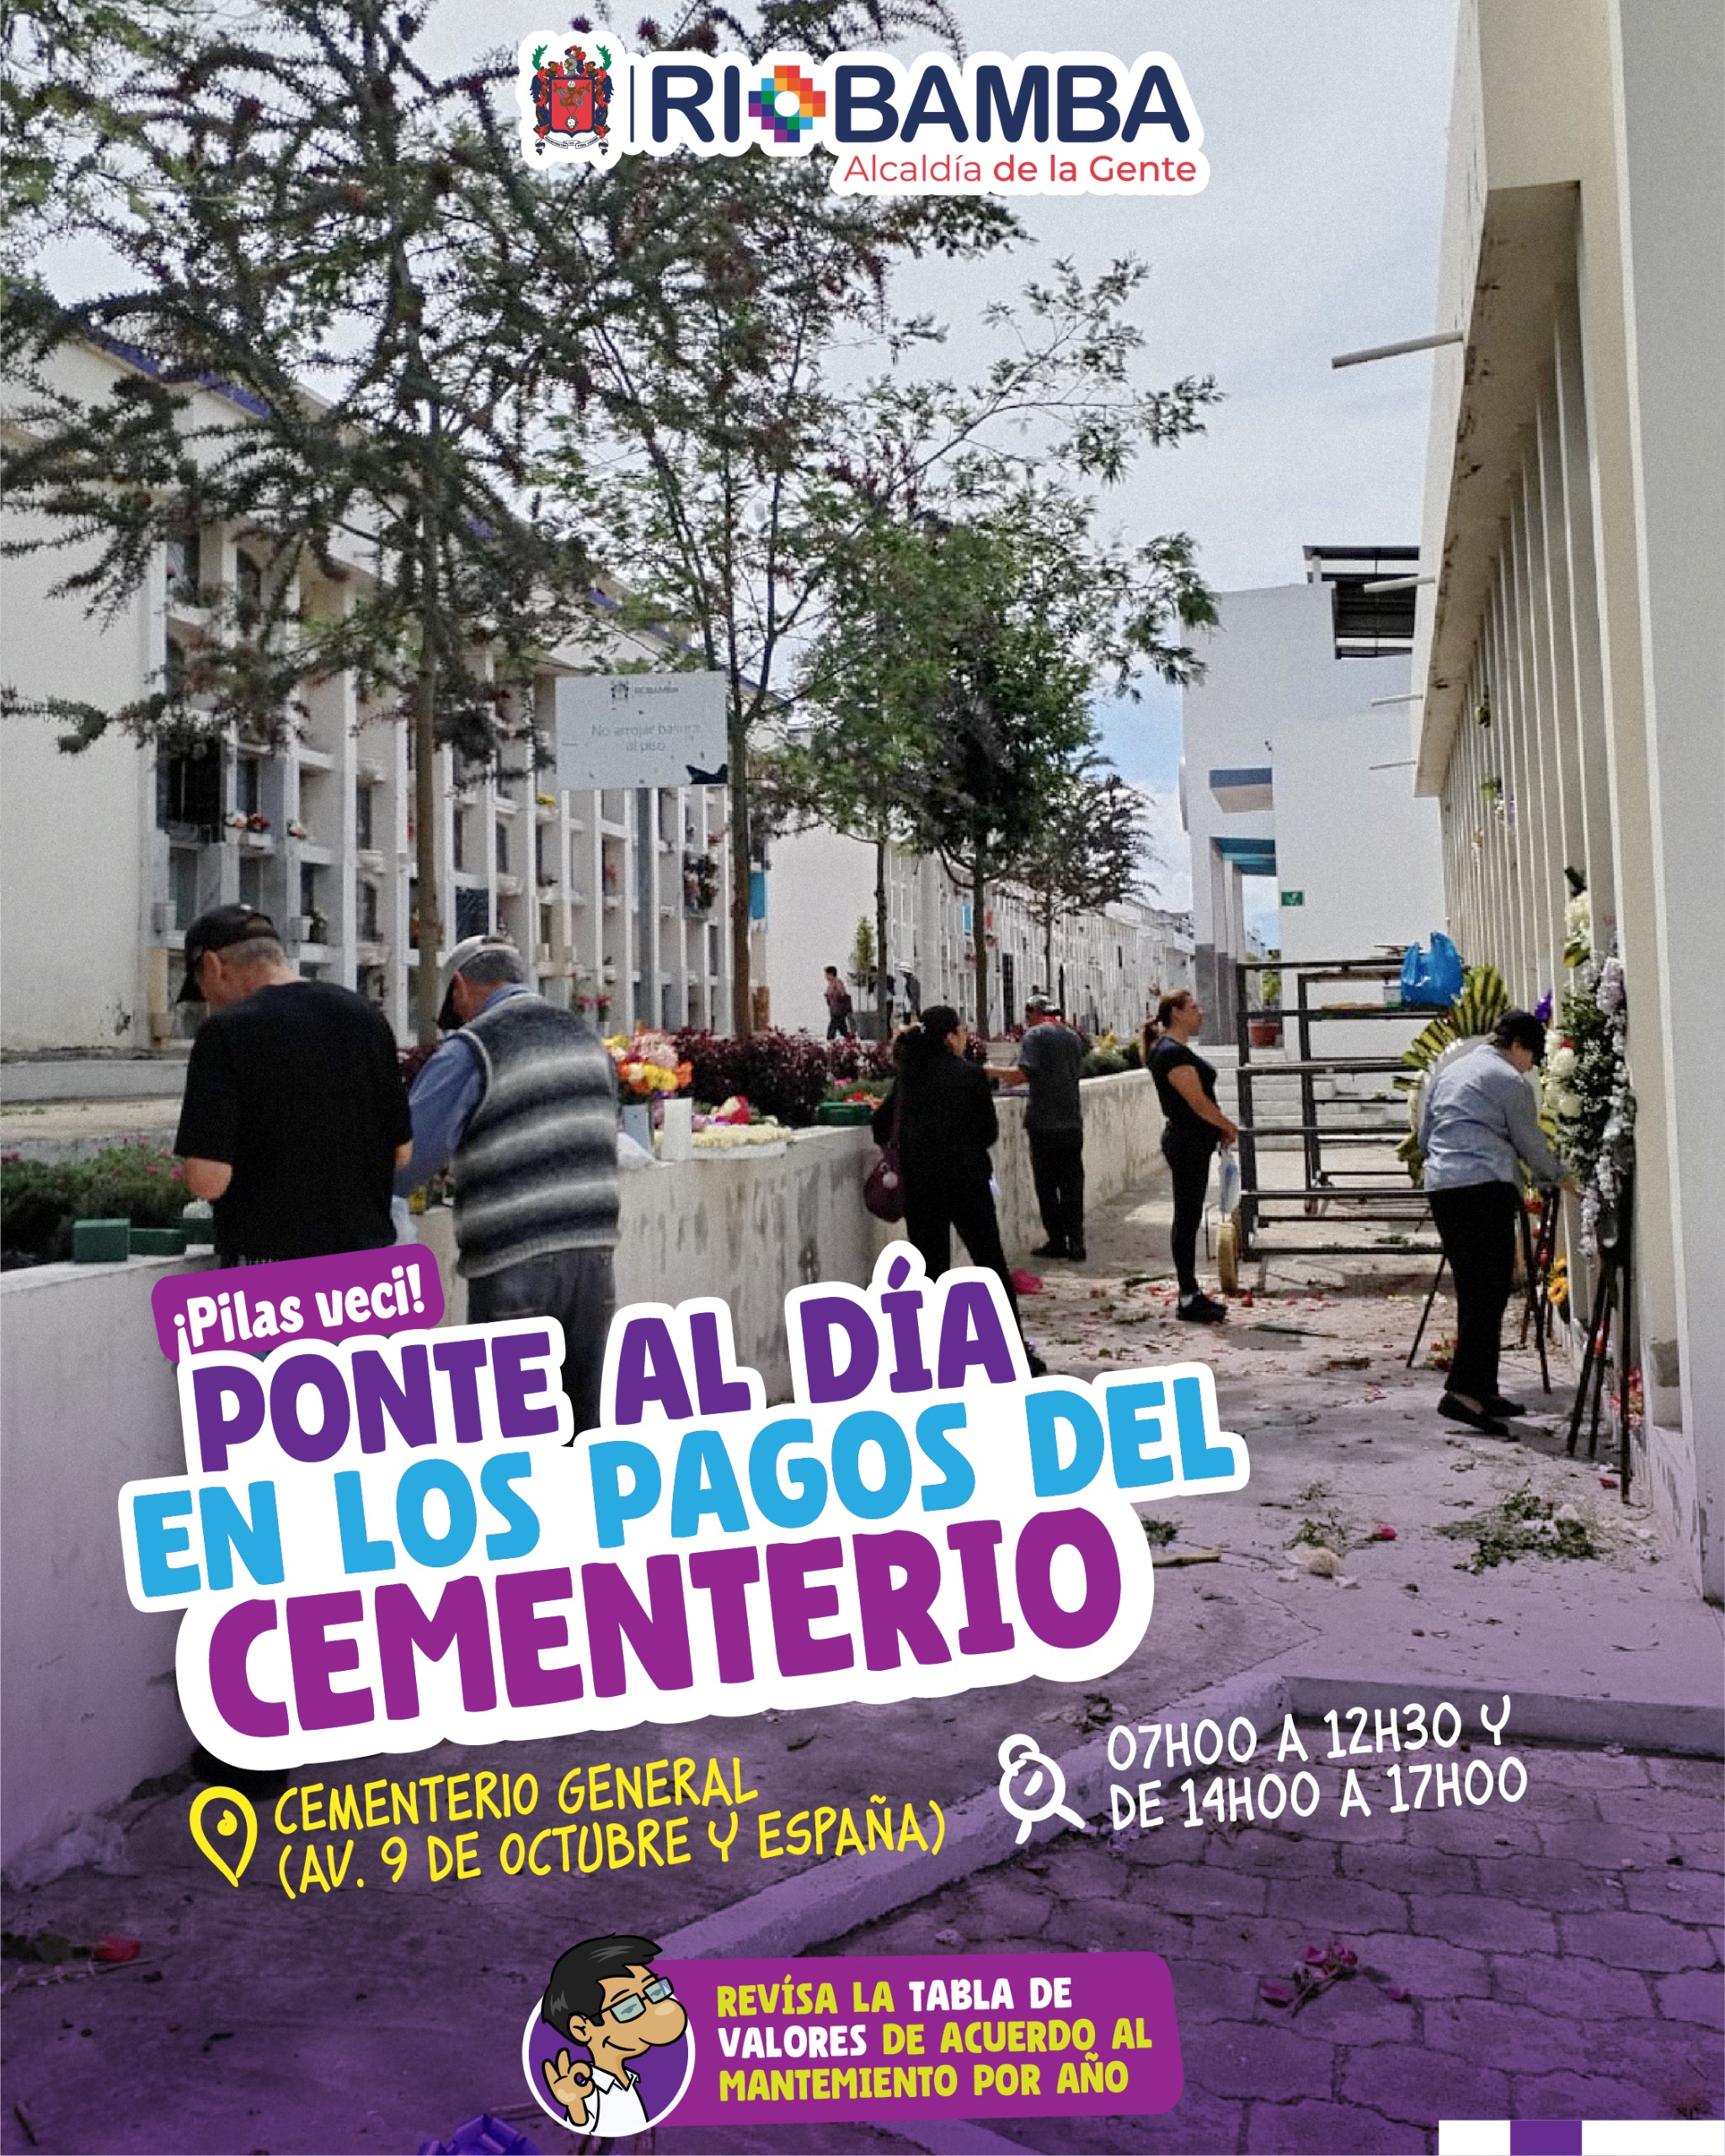 Importante aviso a la ciudadanía: actualización de pagos del cementerio de Riobamba